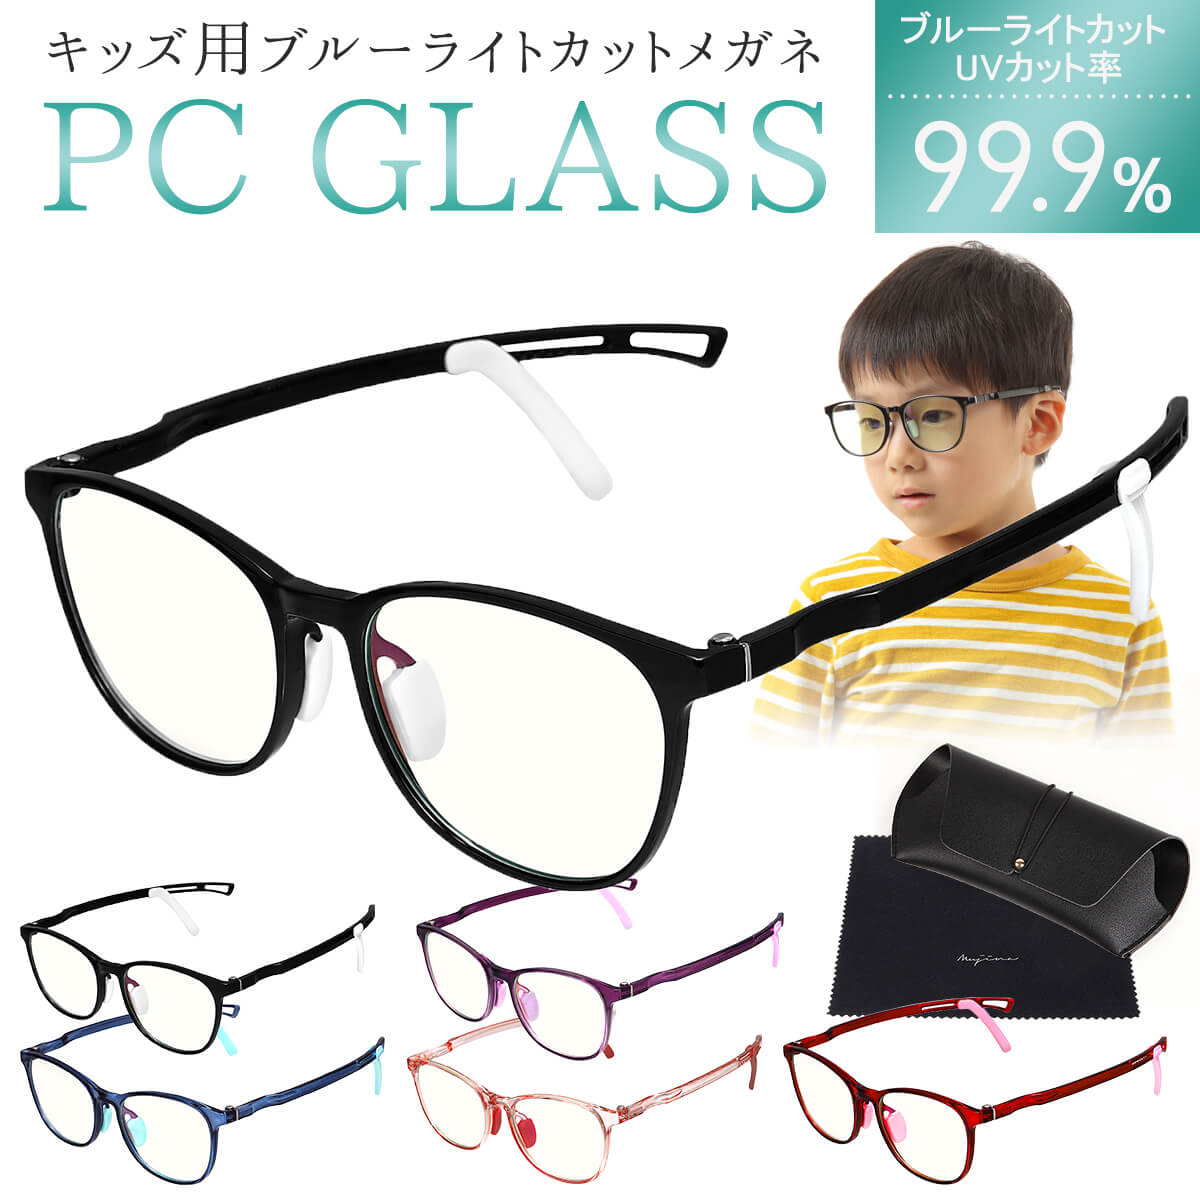 ブルーライトカットメガネ 子供用 PCメガネ PC眼鏡 ブルーライトカット